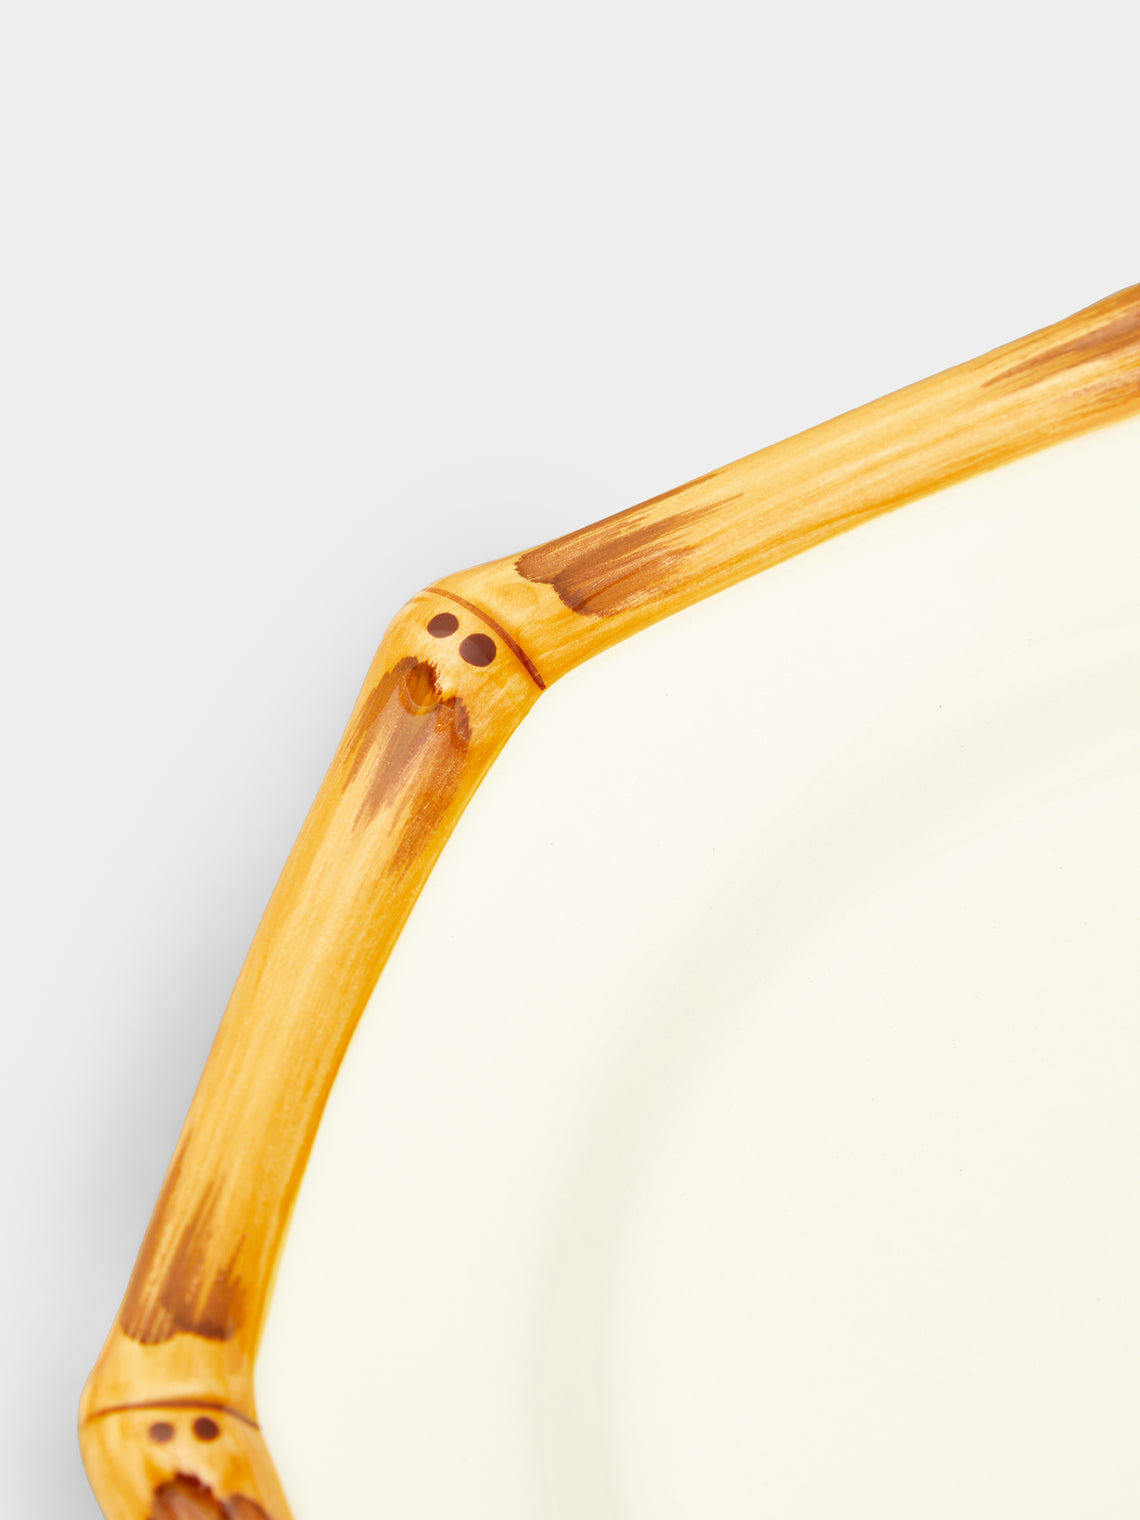 Este Ceramiche - Bamboo Hand-Painted Ceramic Dessert Plates (Set of 4) -  - ABASK